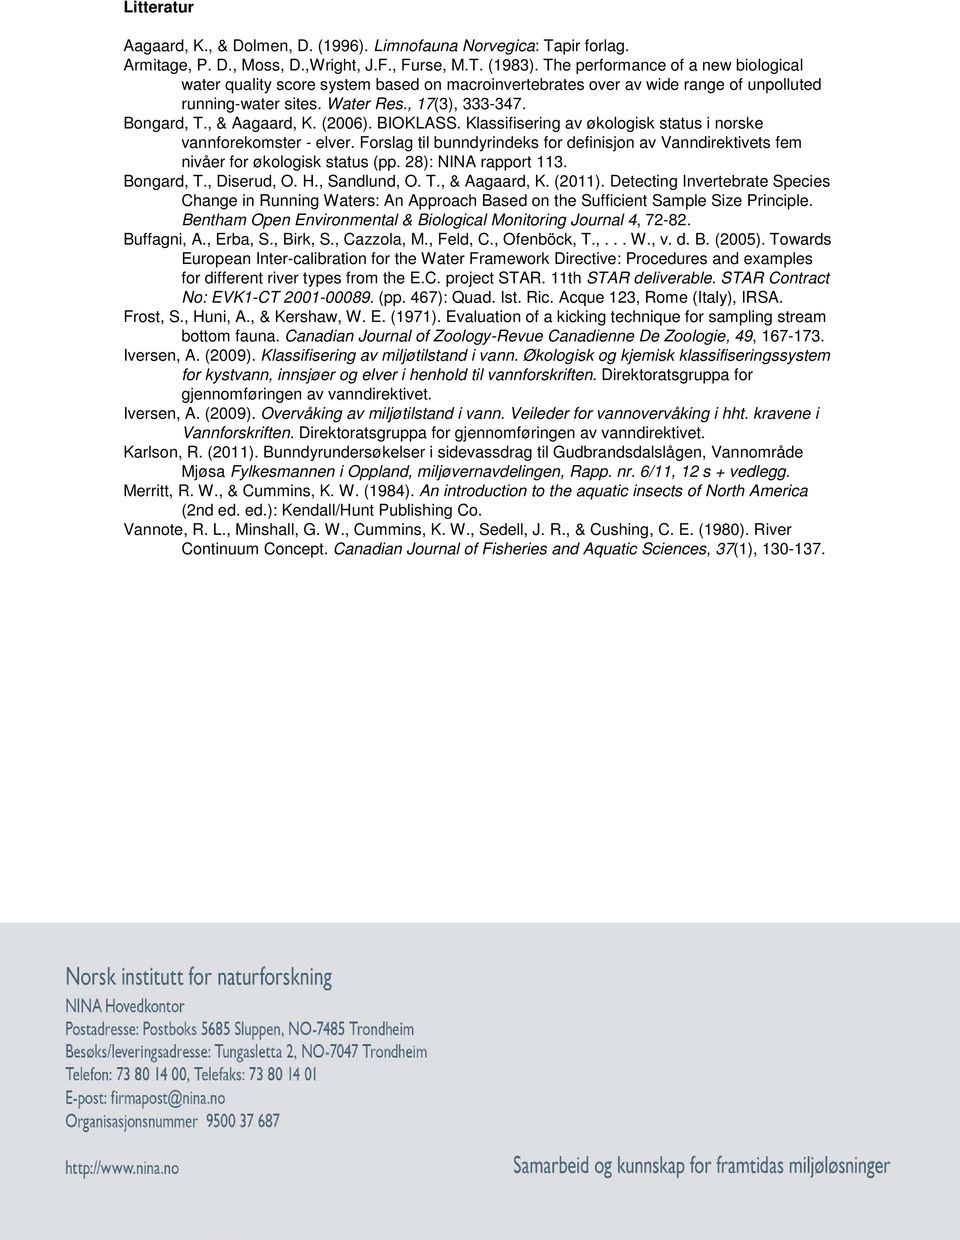 (2006). BIOKLASS. Klassifisering av økologisk status i norske vannforekomster - elver. Forslag til bunndyrindeks for definisjon av Vanndirektivets fem nivåer for økologisk status (pp.